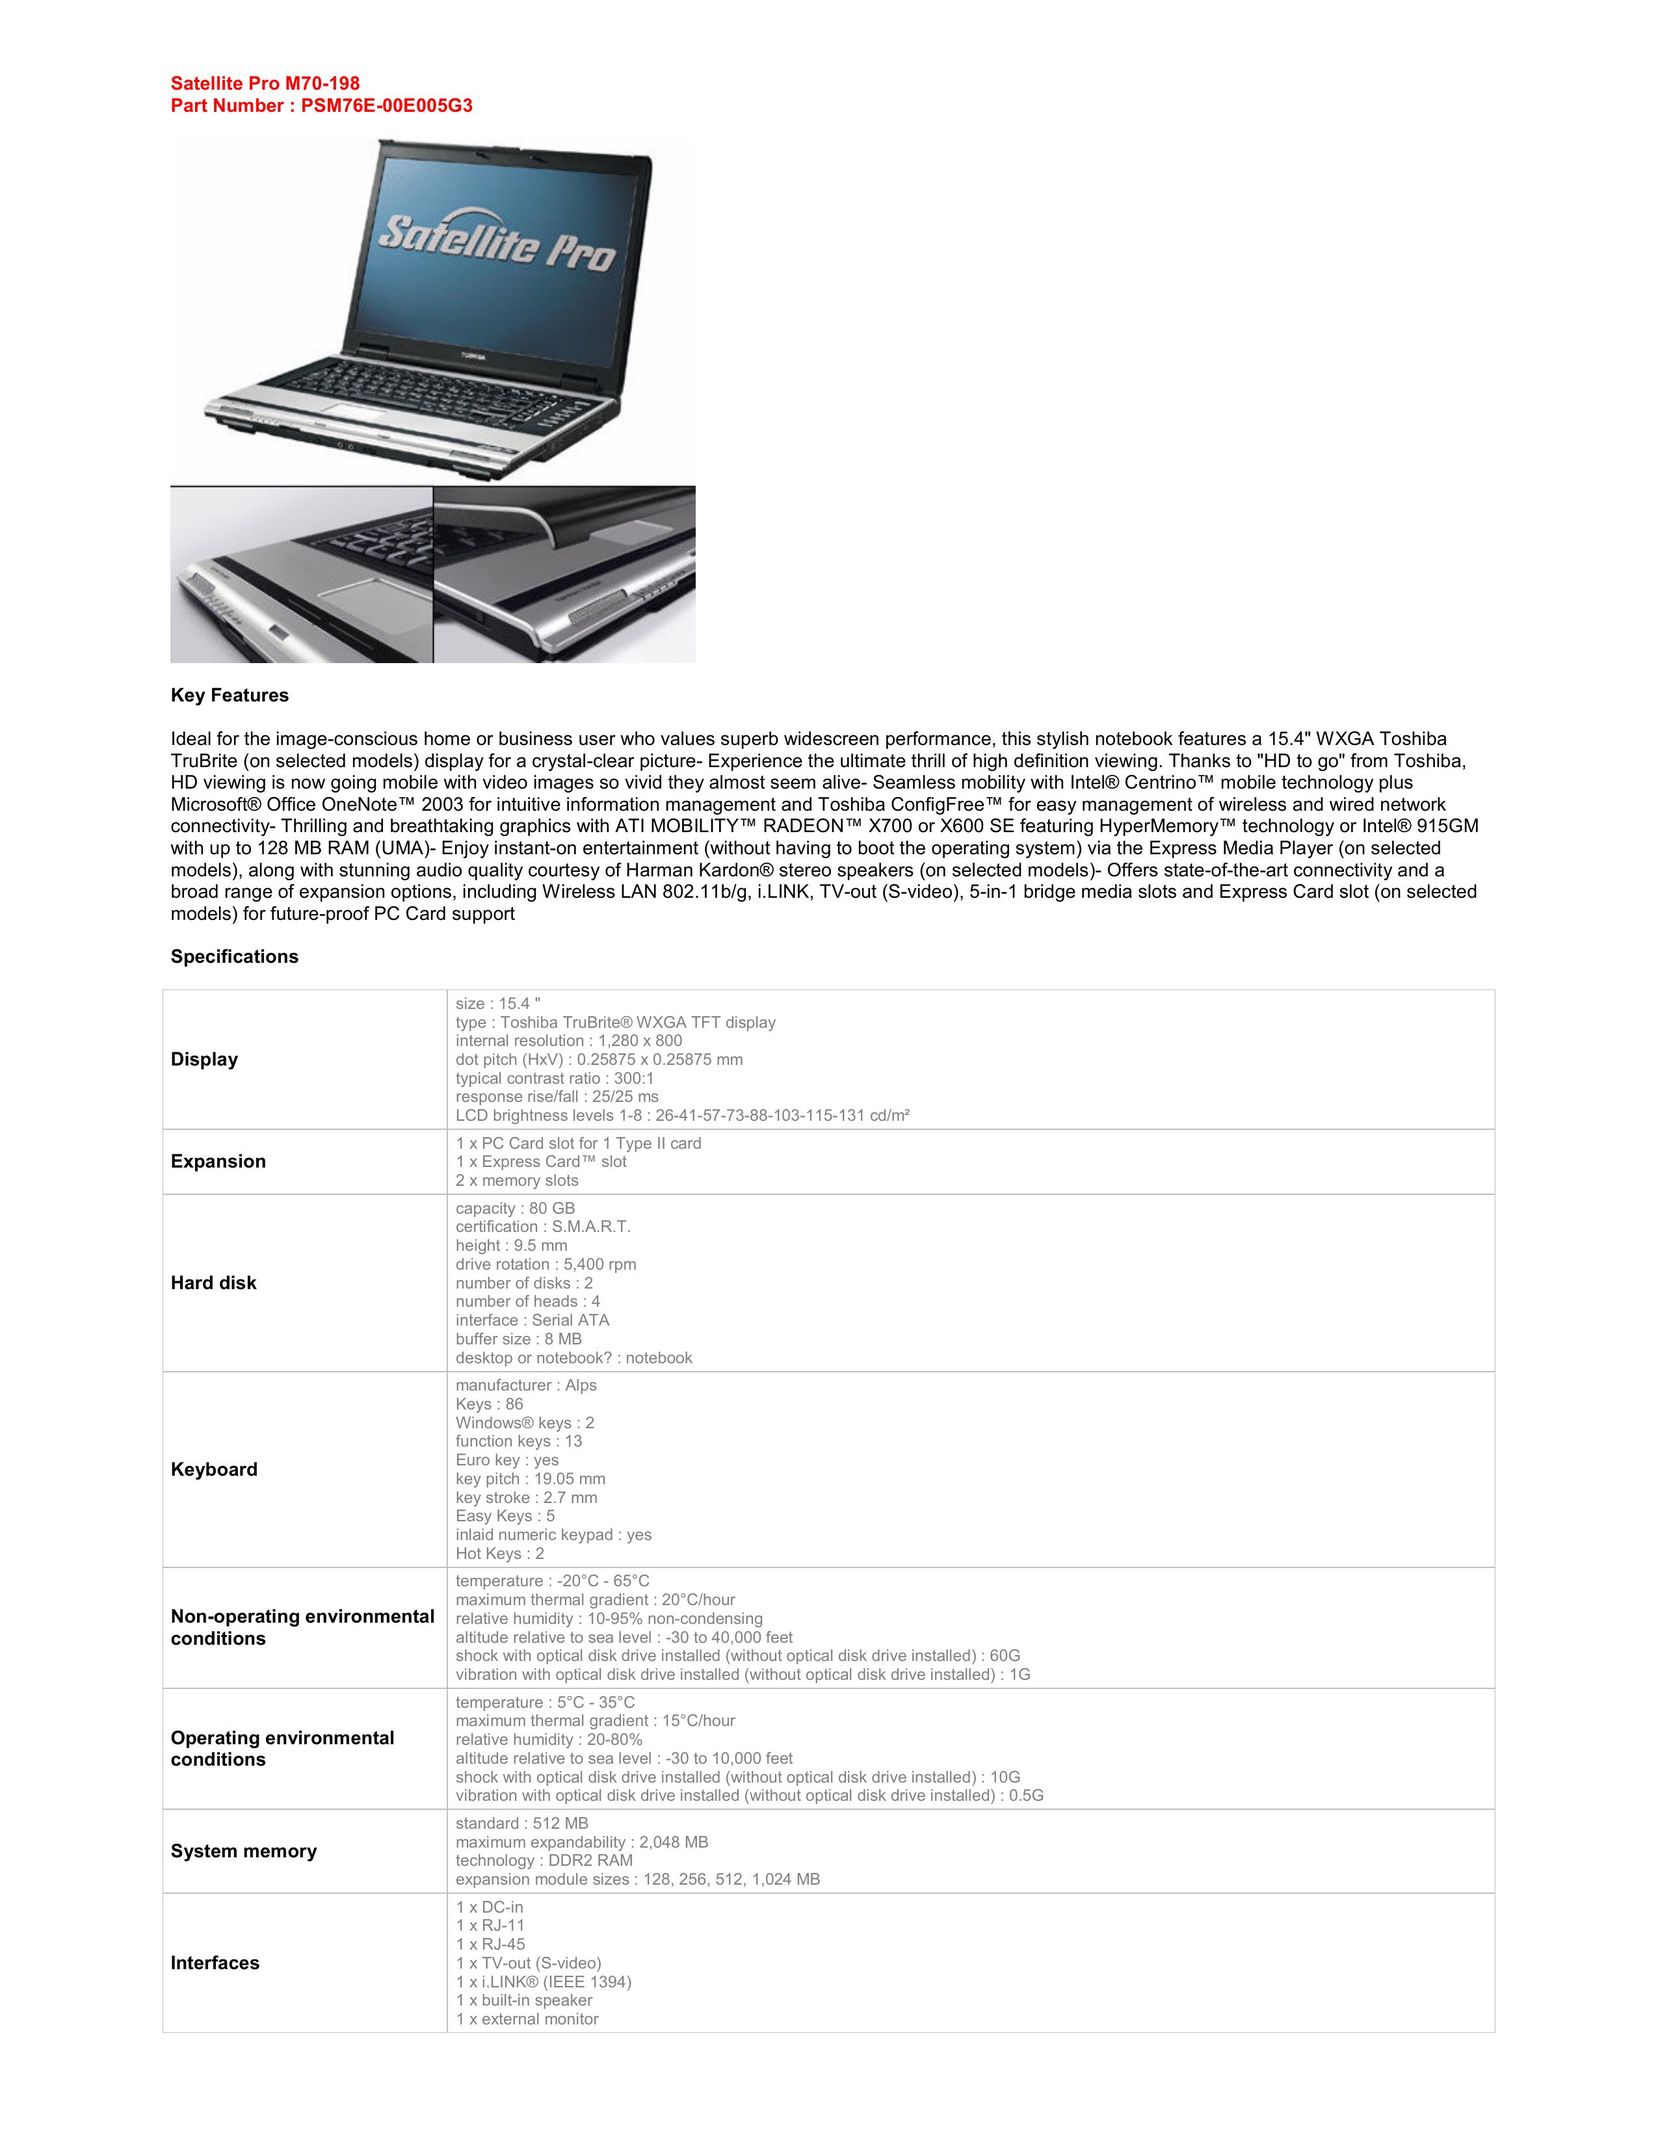 Harman-Kardon M70-198 Laptop User Manual